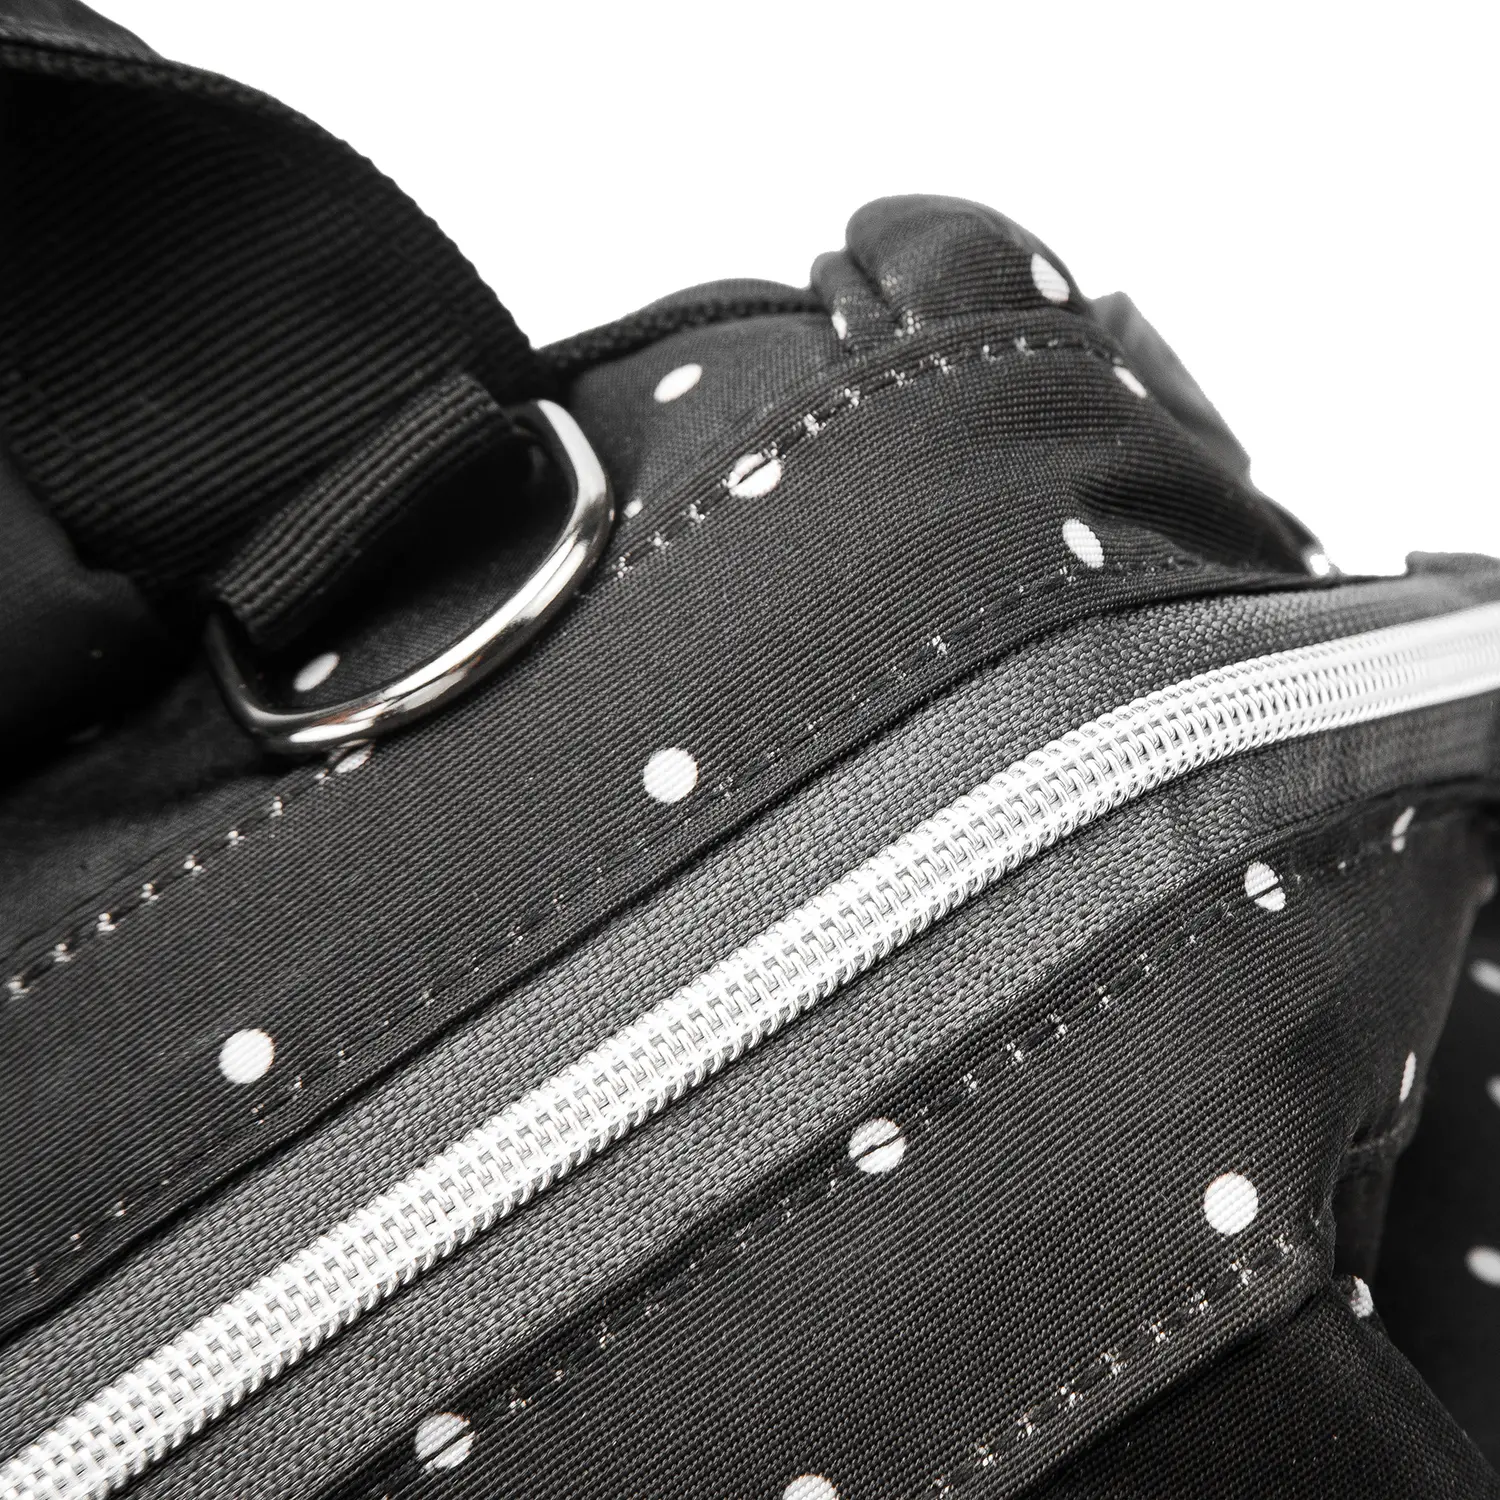 BaBee pelenkázó hátizsák, hátitáska, pelenkázótáska fekete színben, pöttyös (BABEE-M3-DOTTED-BLACK)